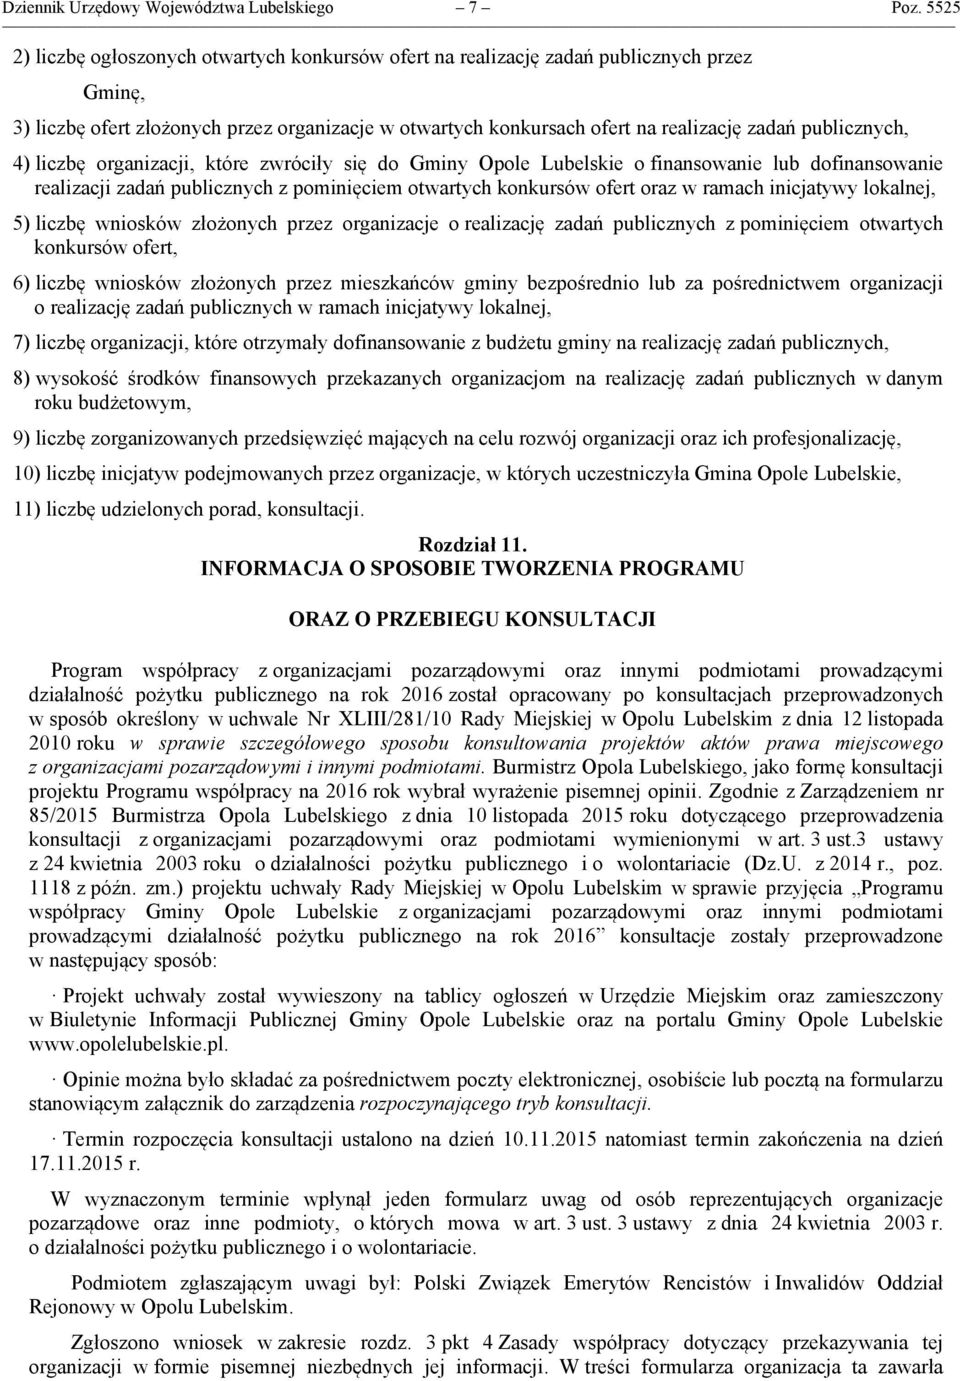 publicznych, 4) liczbę organizacji, które zwróciły się do Gminy Opole Lubelskie o finansowanie lub dofinansowanie realizacji zadań publicznych z pominięciem otwartych konkursów ofert oraz w ramach